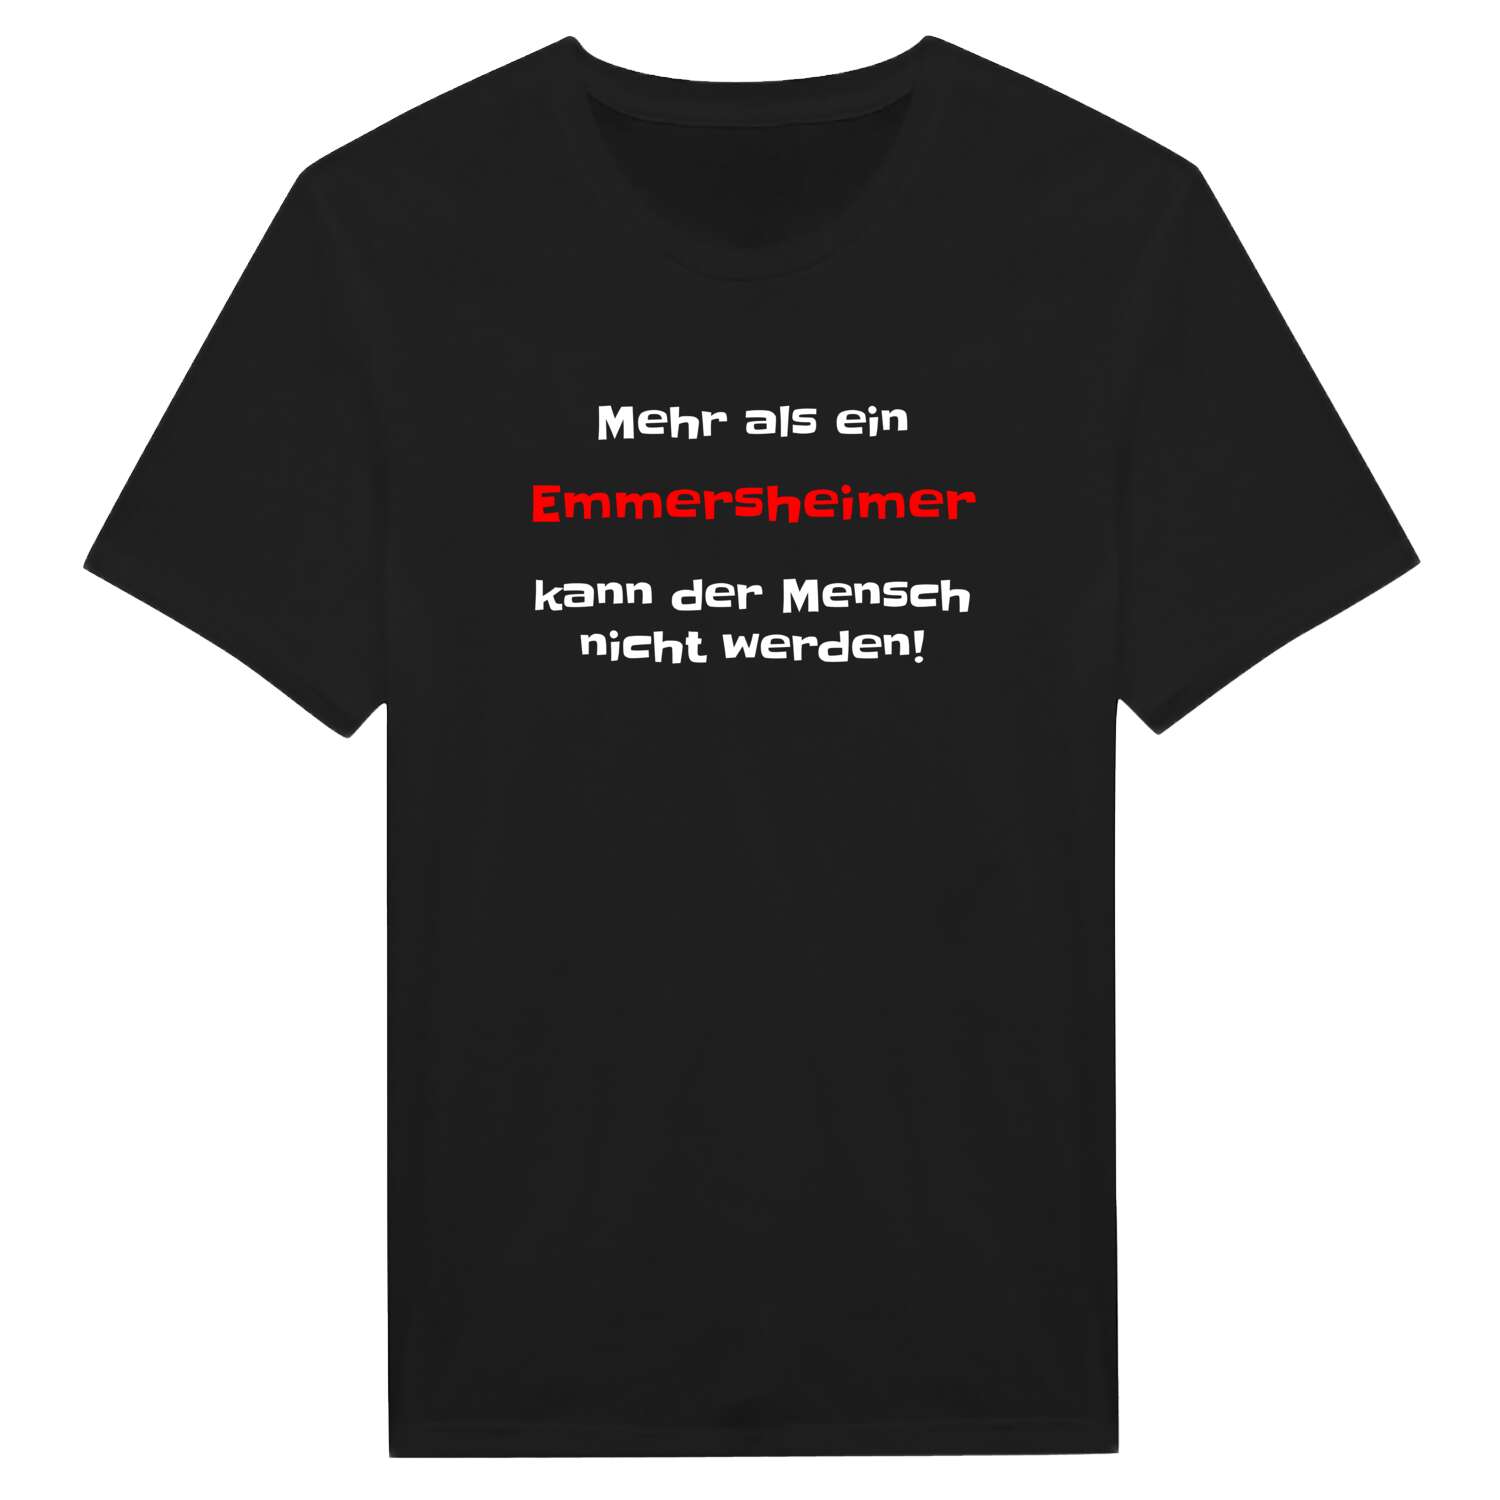 Emmersheim T-Shirt »Mehr als ein«